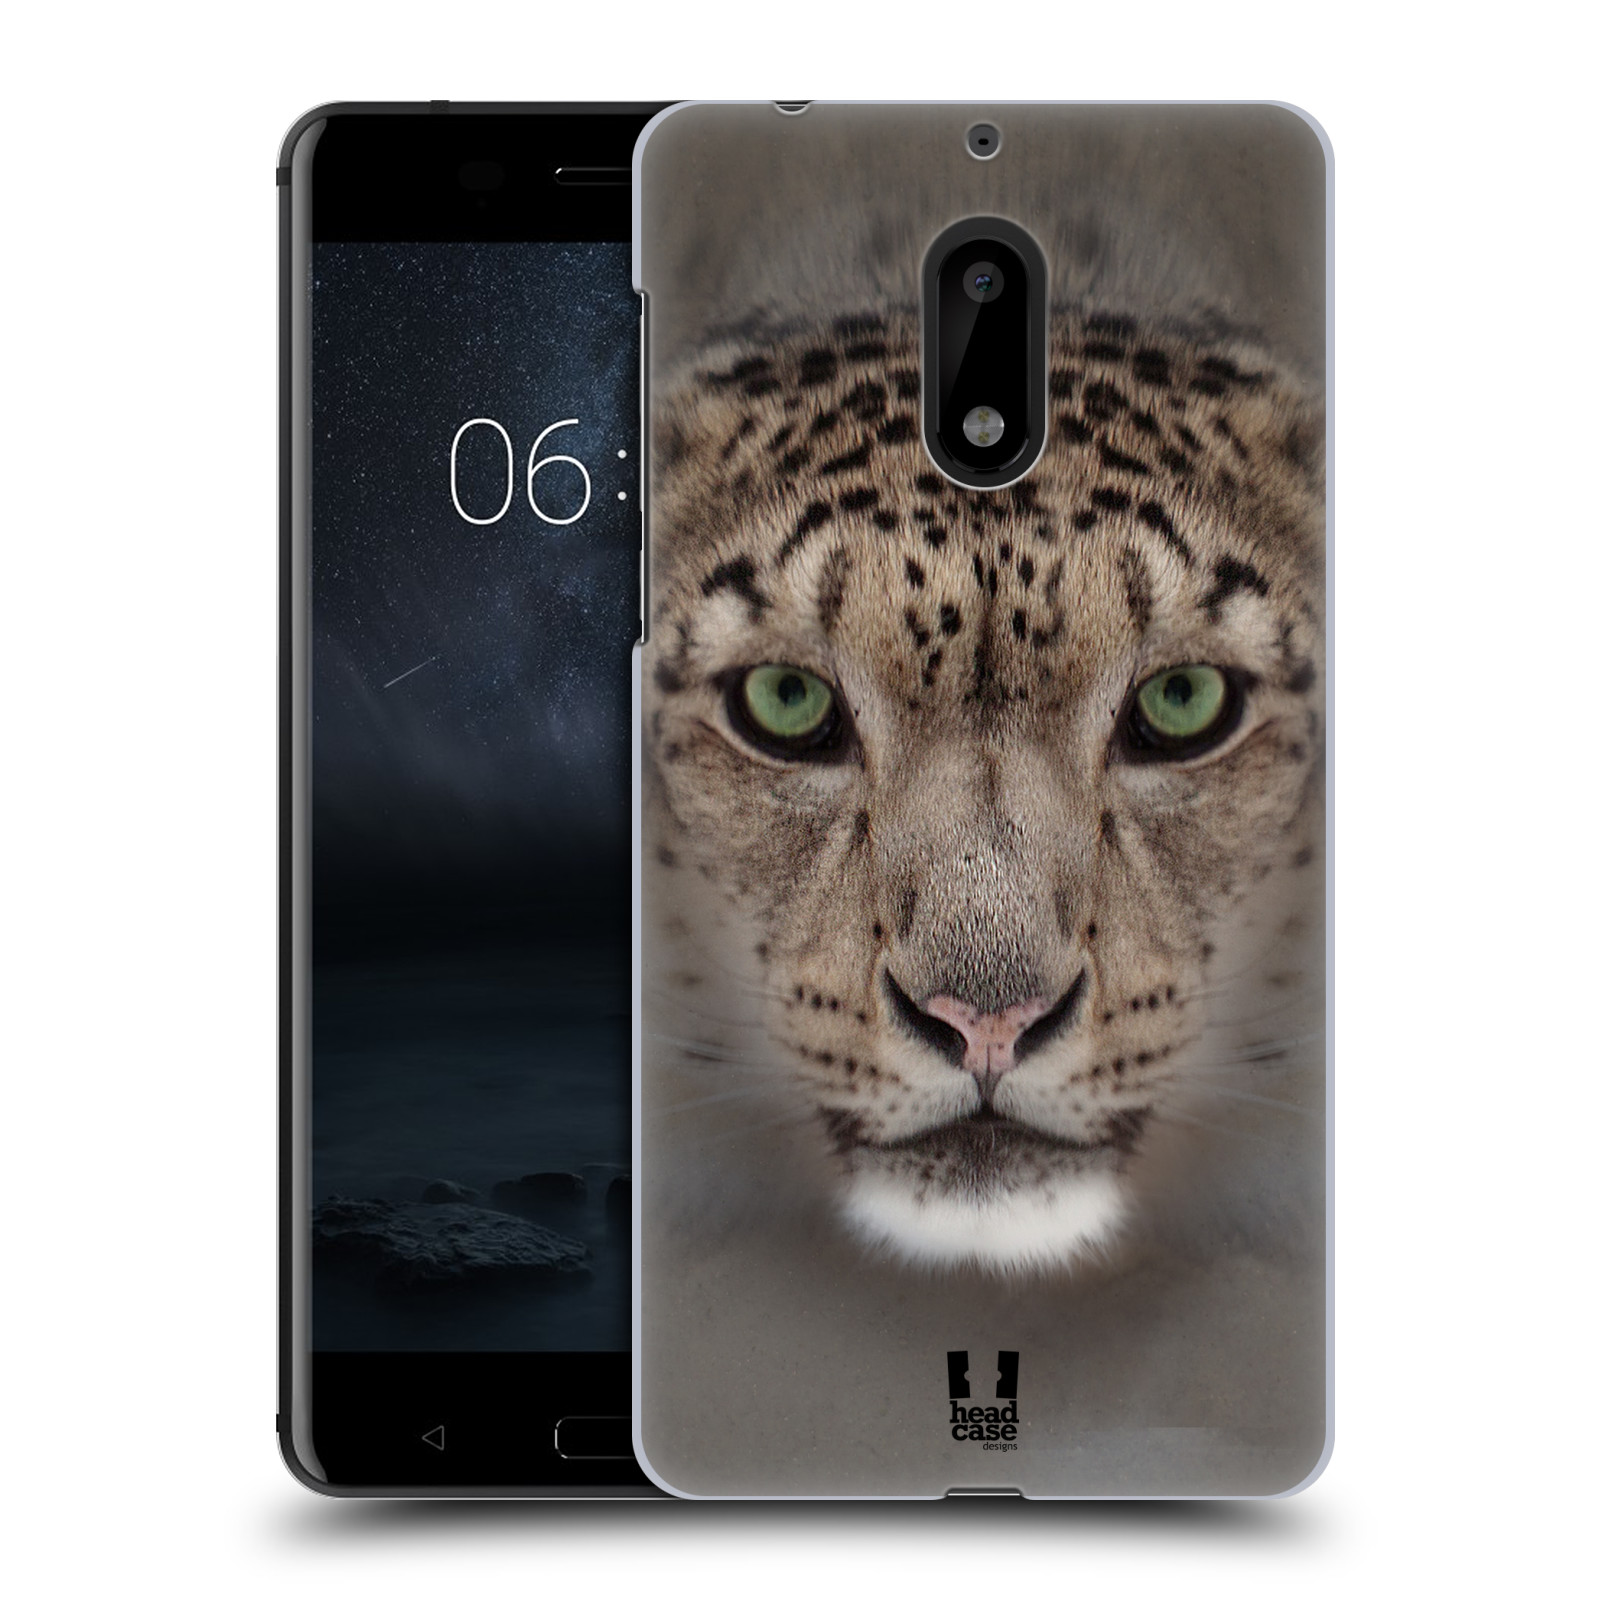 HEAD CASE plastový obal na mobil Nokia 6 vzor Zvířecí tváře 2 sněžný leopard